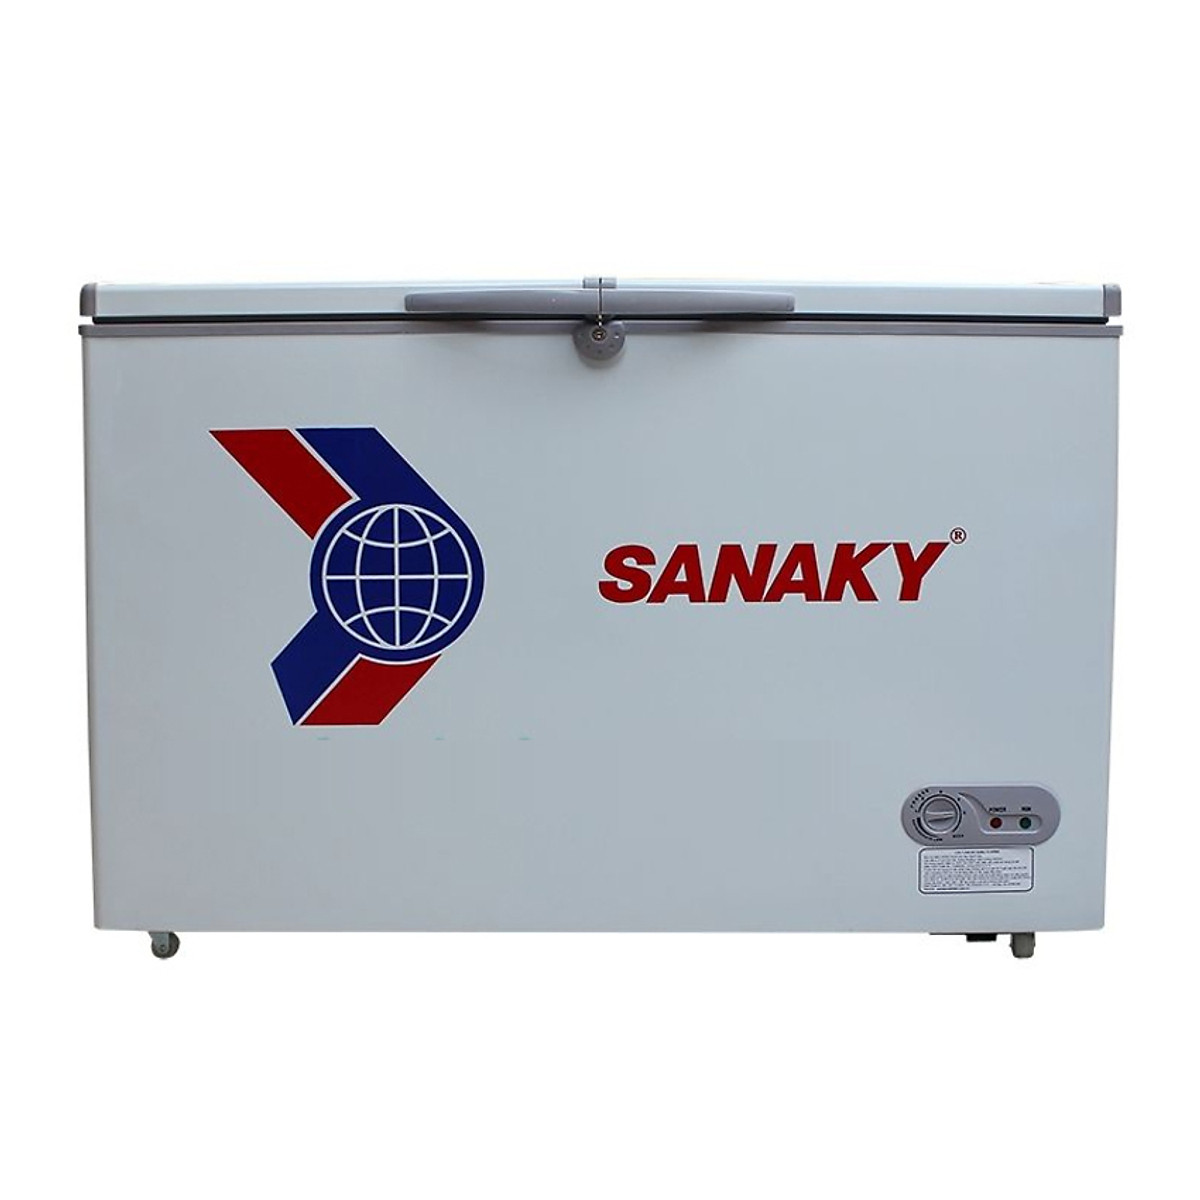 Tủ Đông Sanaky VH-2599A1 (200L) - Hàng Chính Hãng